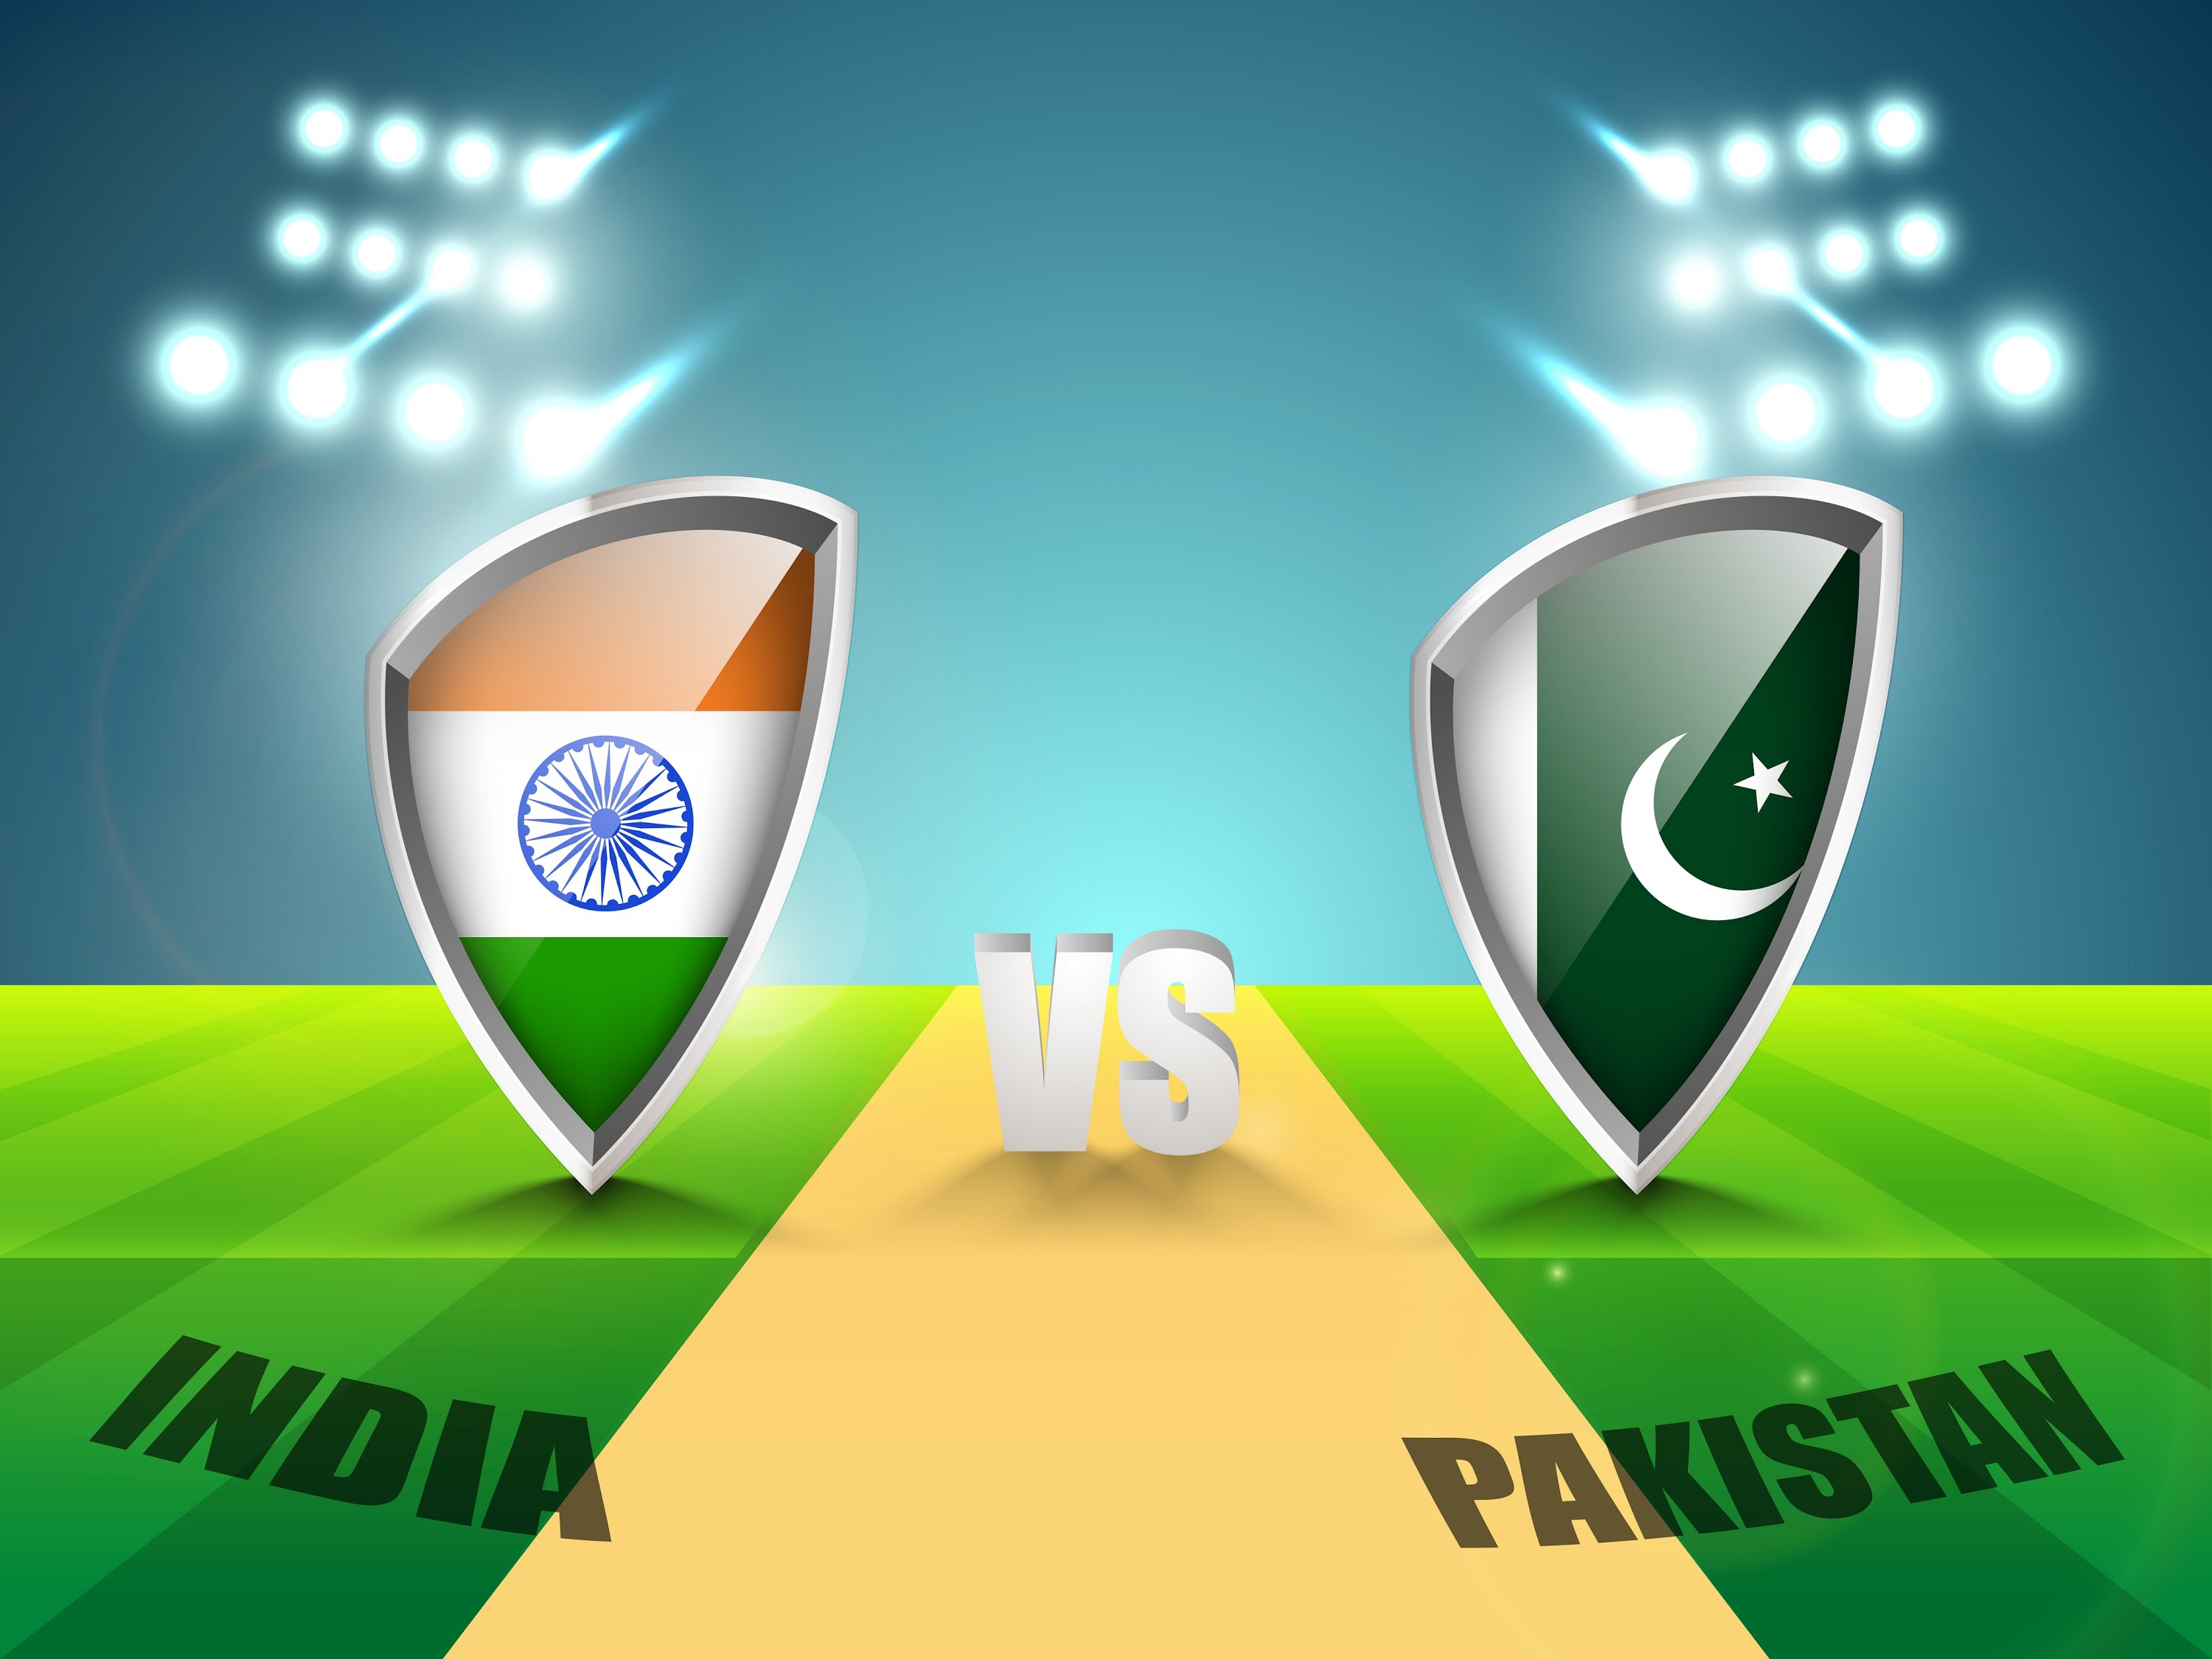 विश्वकप क्रिकेट : विश्वकपकै रोमान्चक खेल आज , भारत र पाकिस्तान भिड्दै